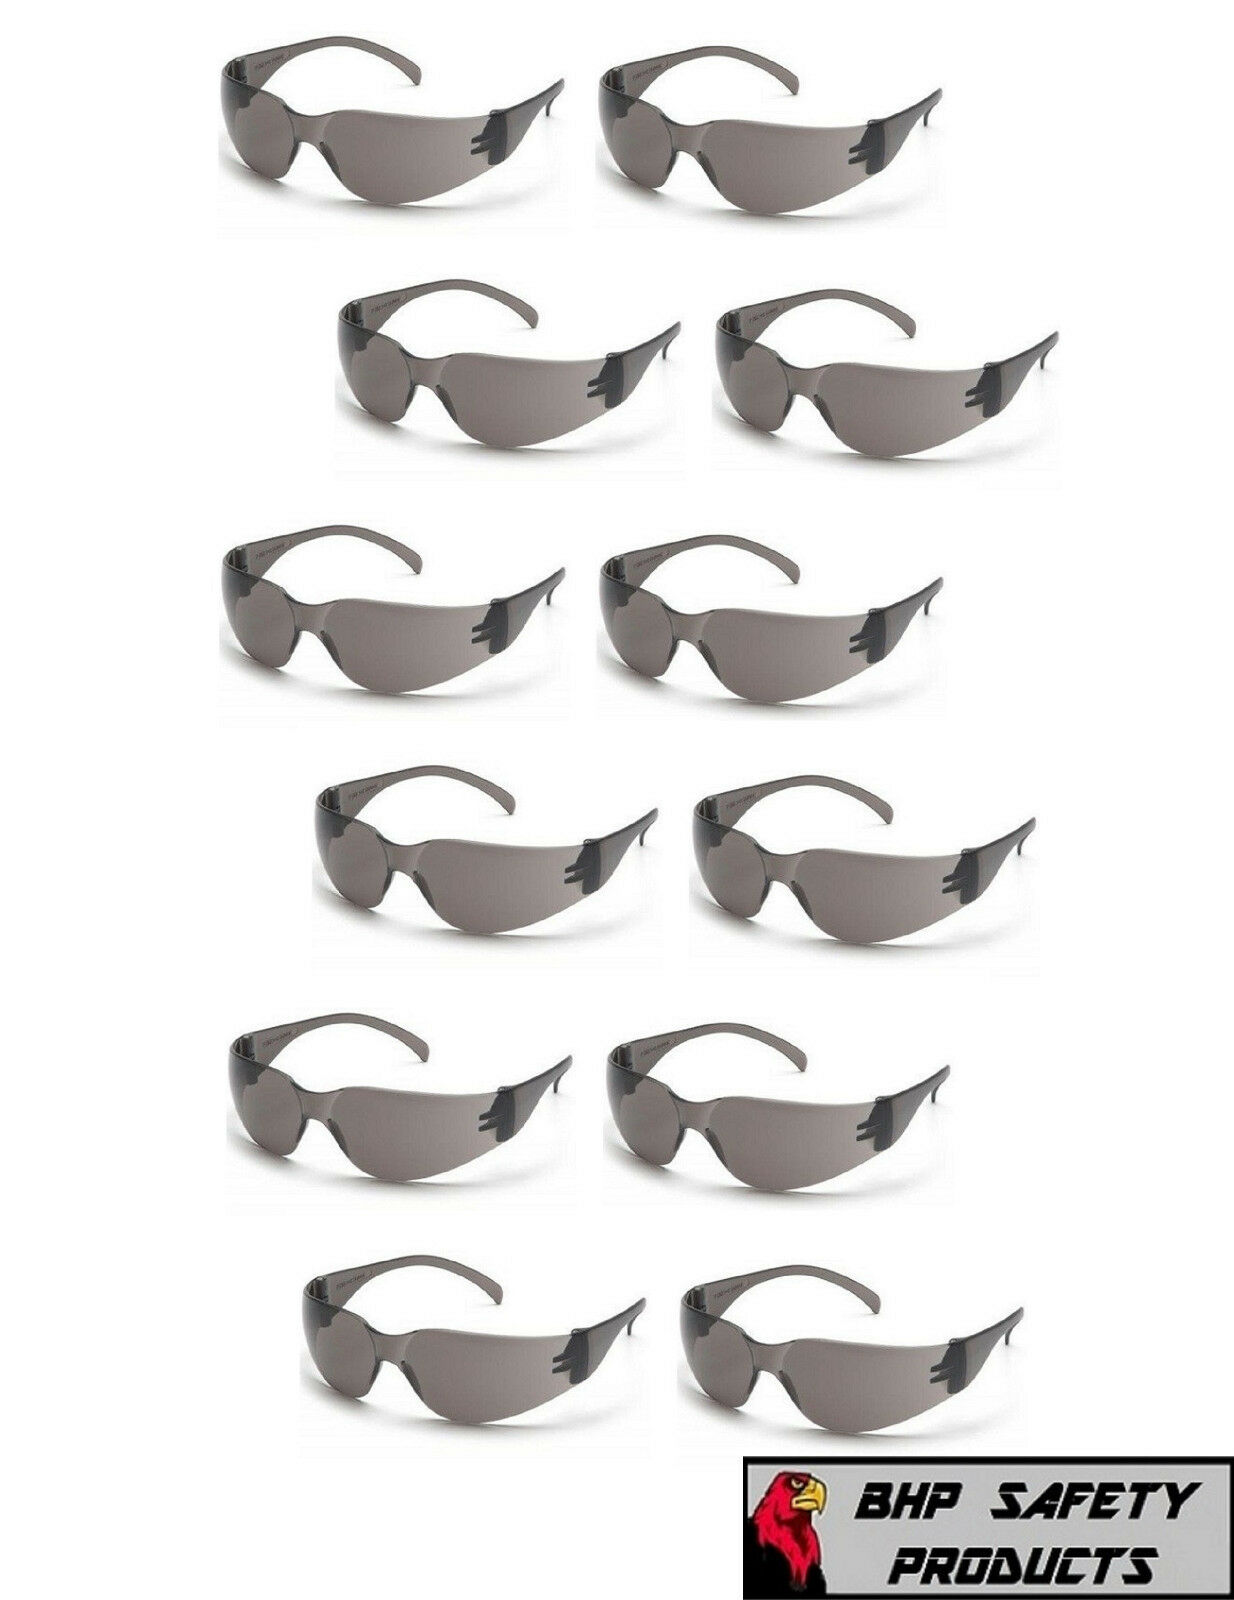 Pyramex Intruder S4120s Smoke/gray Safety Glasses Work Eyewear - 12 Pair/1dozen